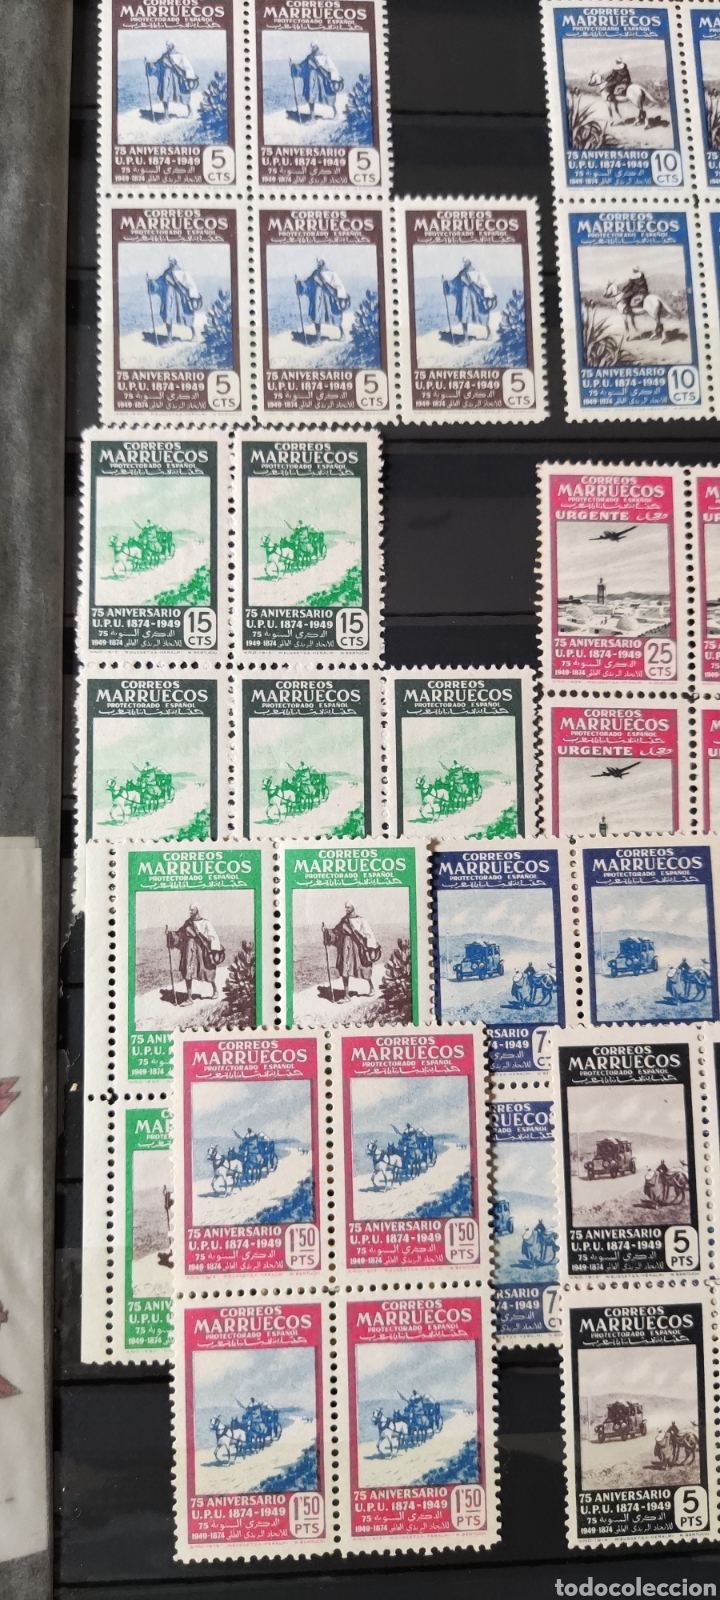 Sellos: Marruecos sellos serie completa en bloques de 4 nuevos** - Foto 2 - 303711768